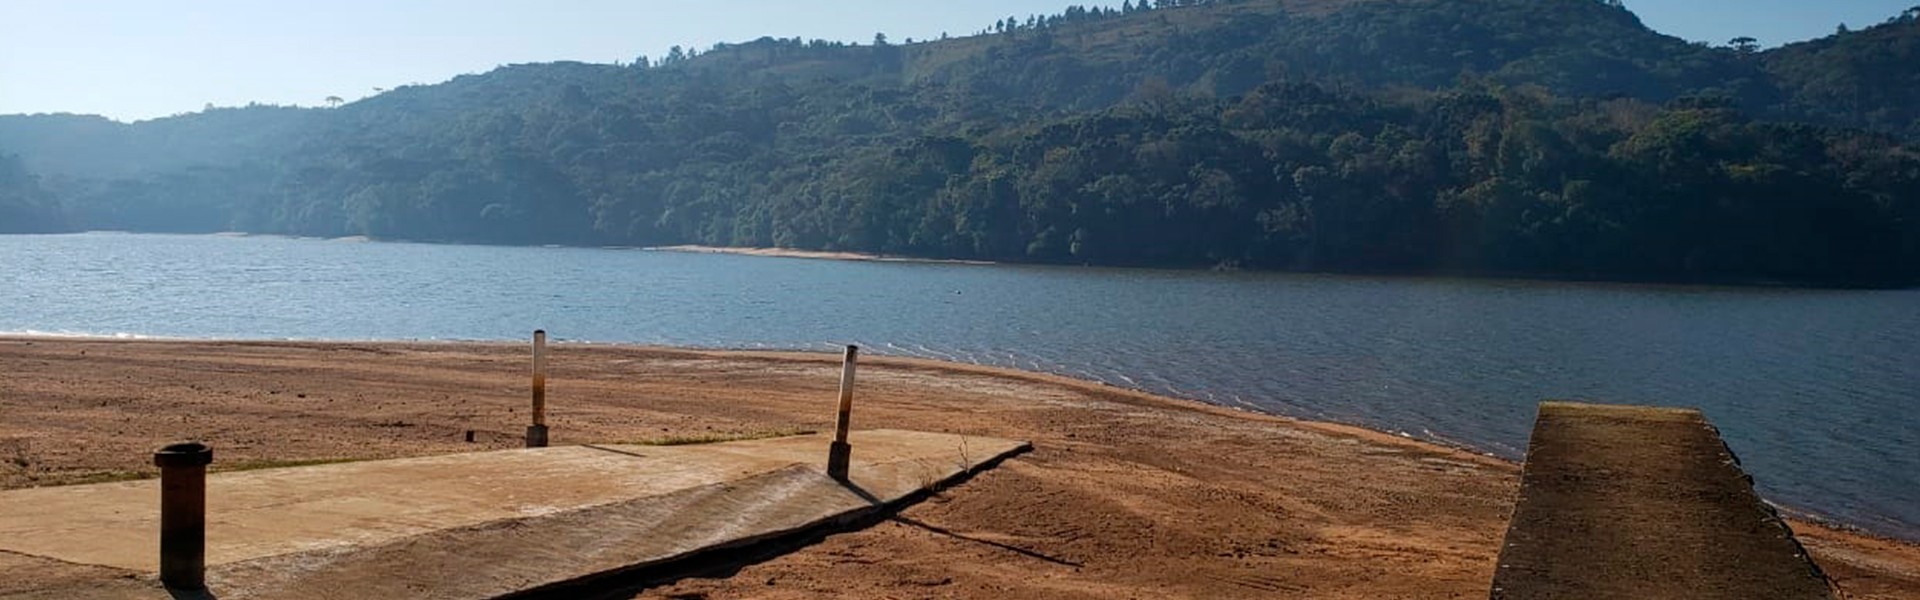 Mutirão para limpeza de represa ocorre em Ponta Grossa, no Paraná